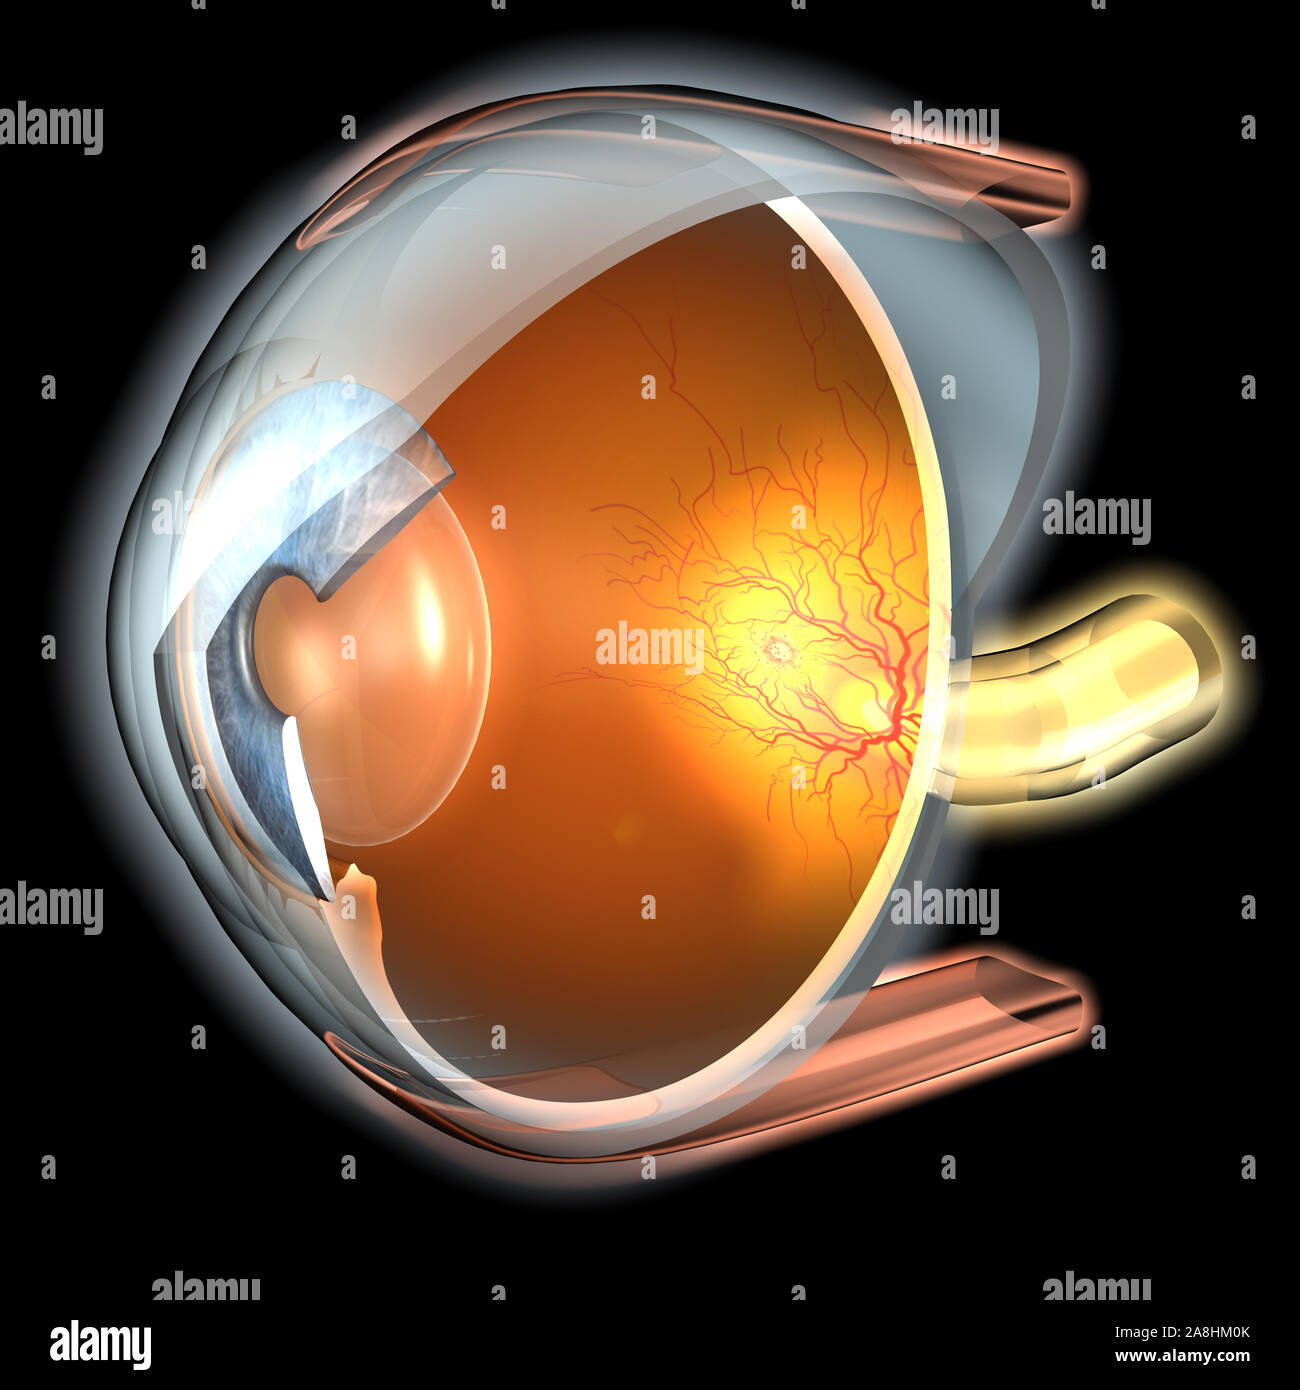 Dal punto di vista medico 3D illustrazione che mostra l occhio umano con la pupilla, l'iride, lente, camera anteriore, nella camera posteriore, corpo ciliare, nervose, retina,eye ball e vitr Foto Stock